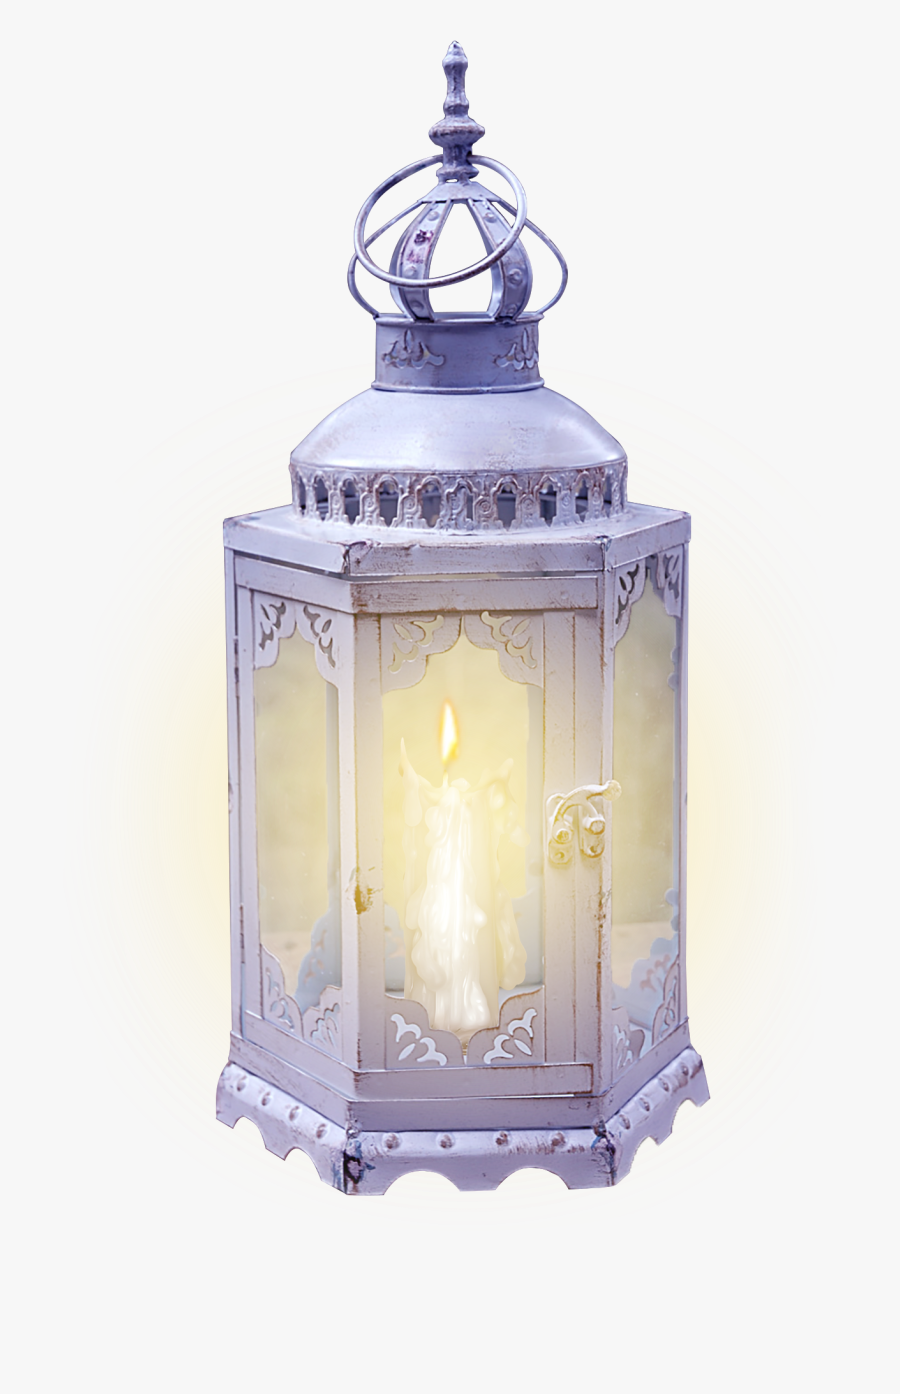 Vintage Candle Lamp Png, Transparent Clipart